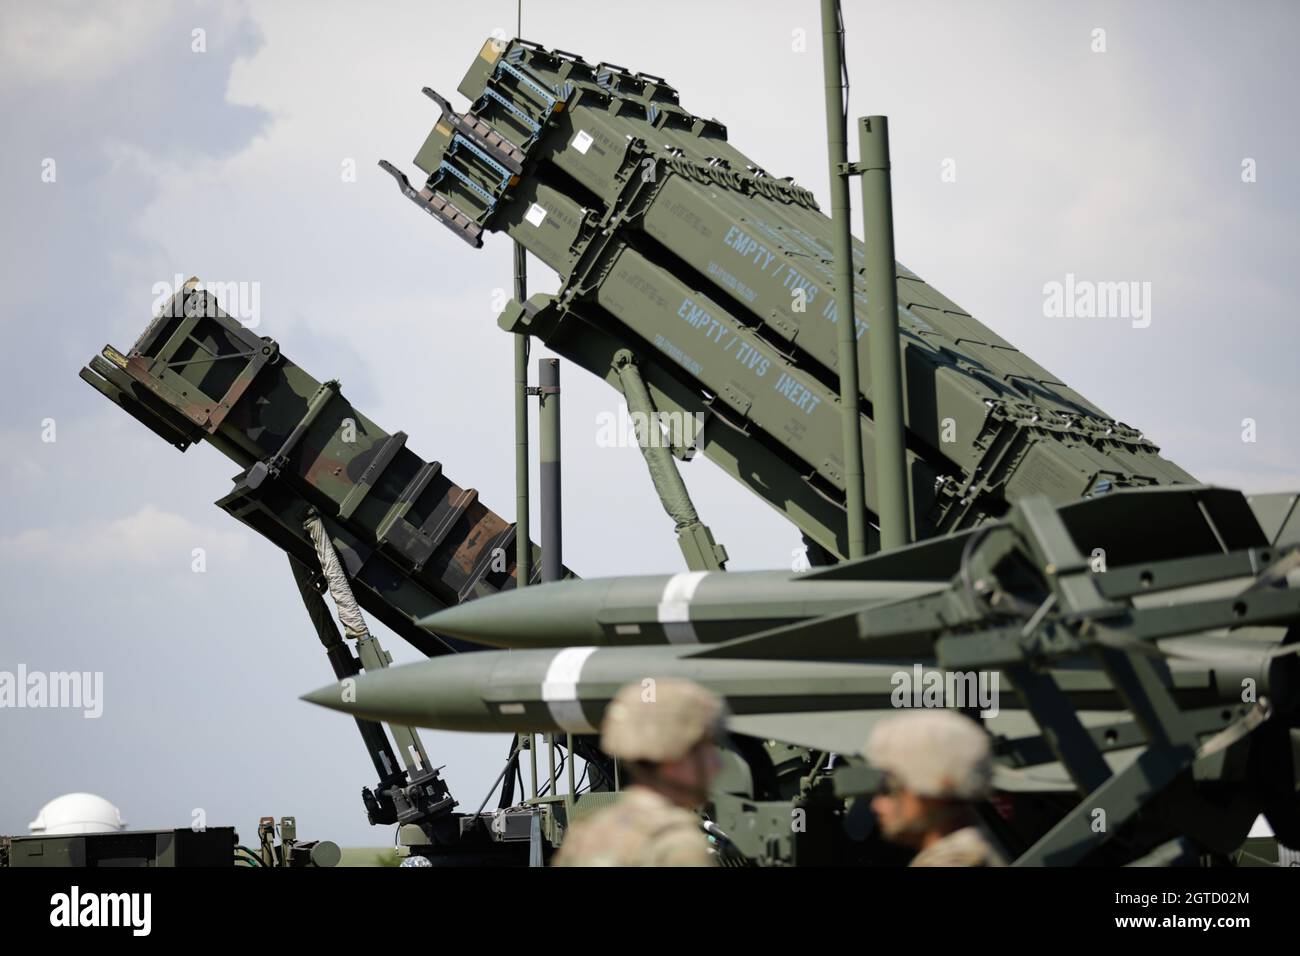 Capu Midia, Rumänien - 9. Juni 2021: Das Patriot-Raketenflugkörper-System der rumänischen Armee im Nationalen Ausbildungszentrum für Luftverteidigung. Stockfoto